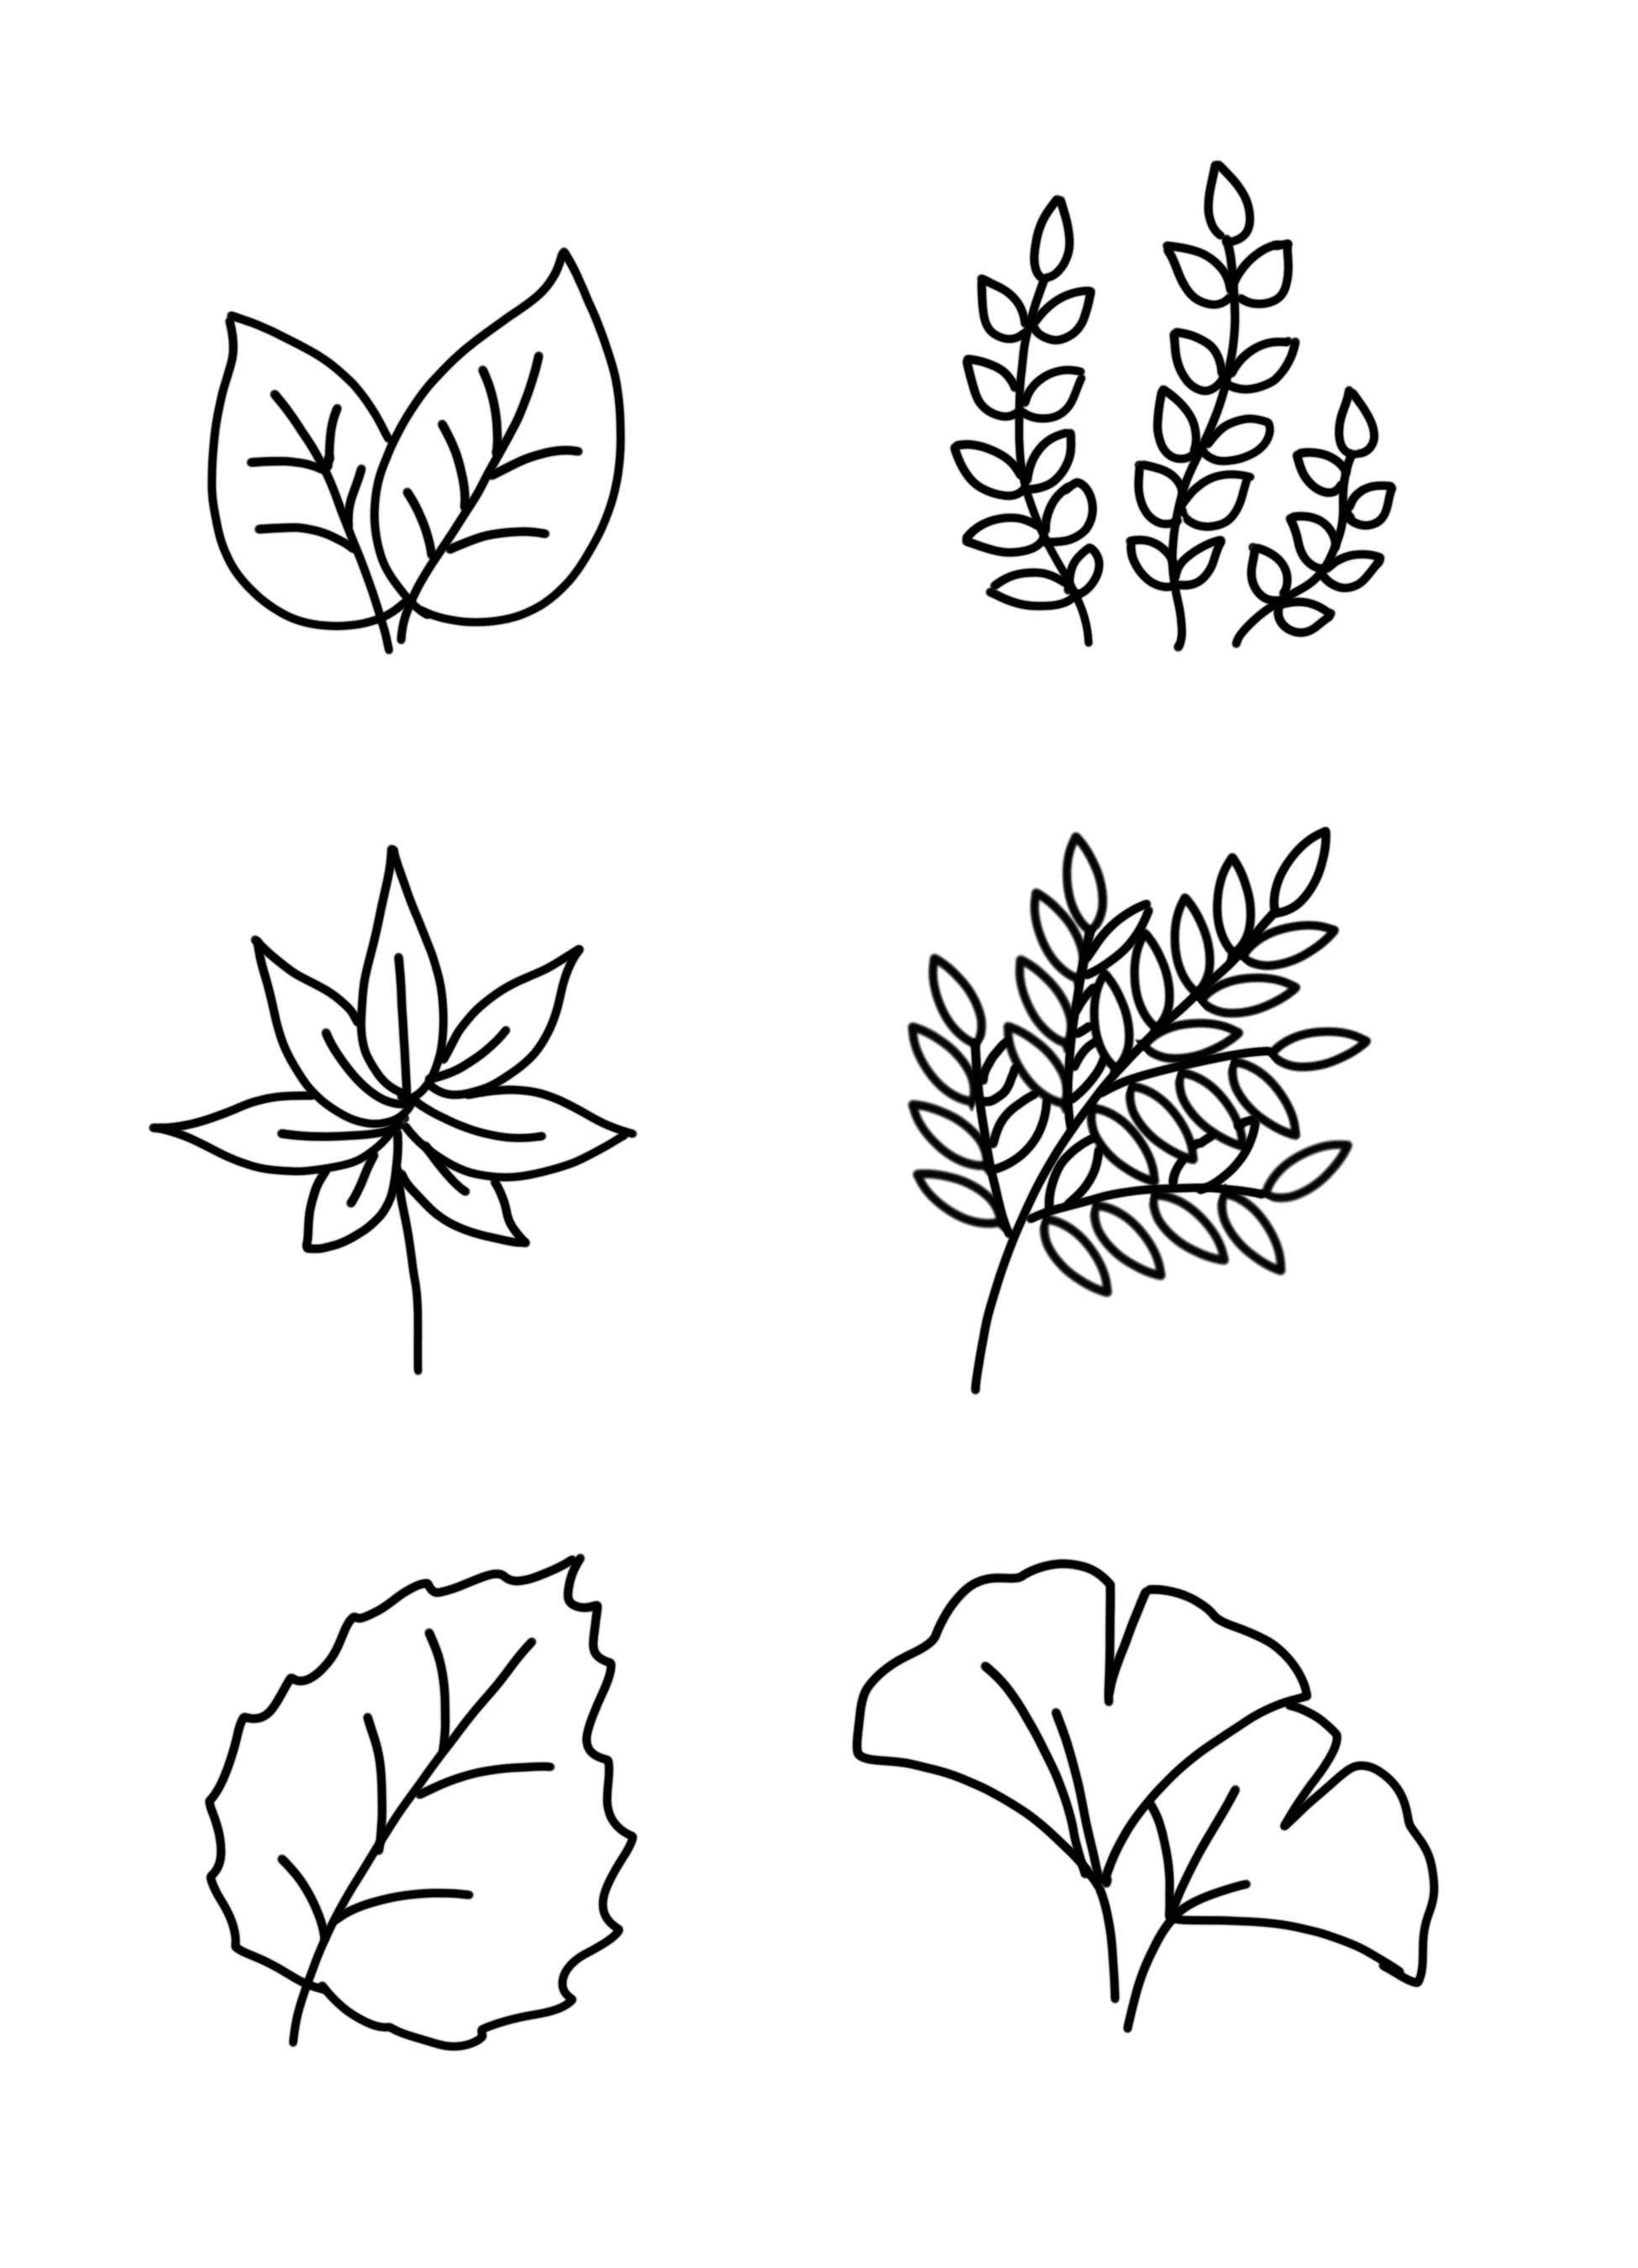 各种各样的植物叶子简笔画图片大全